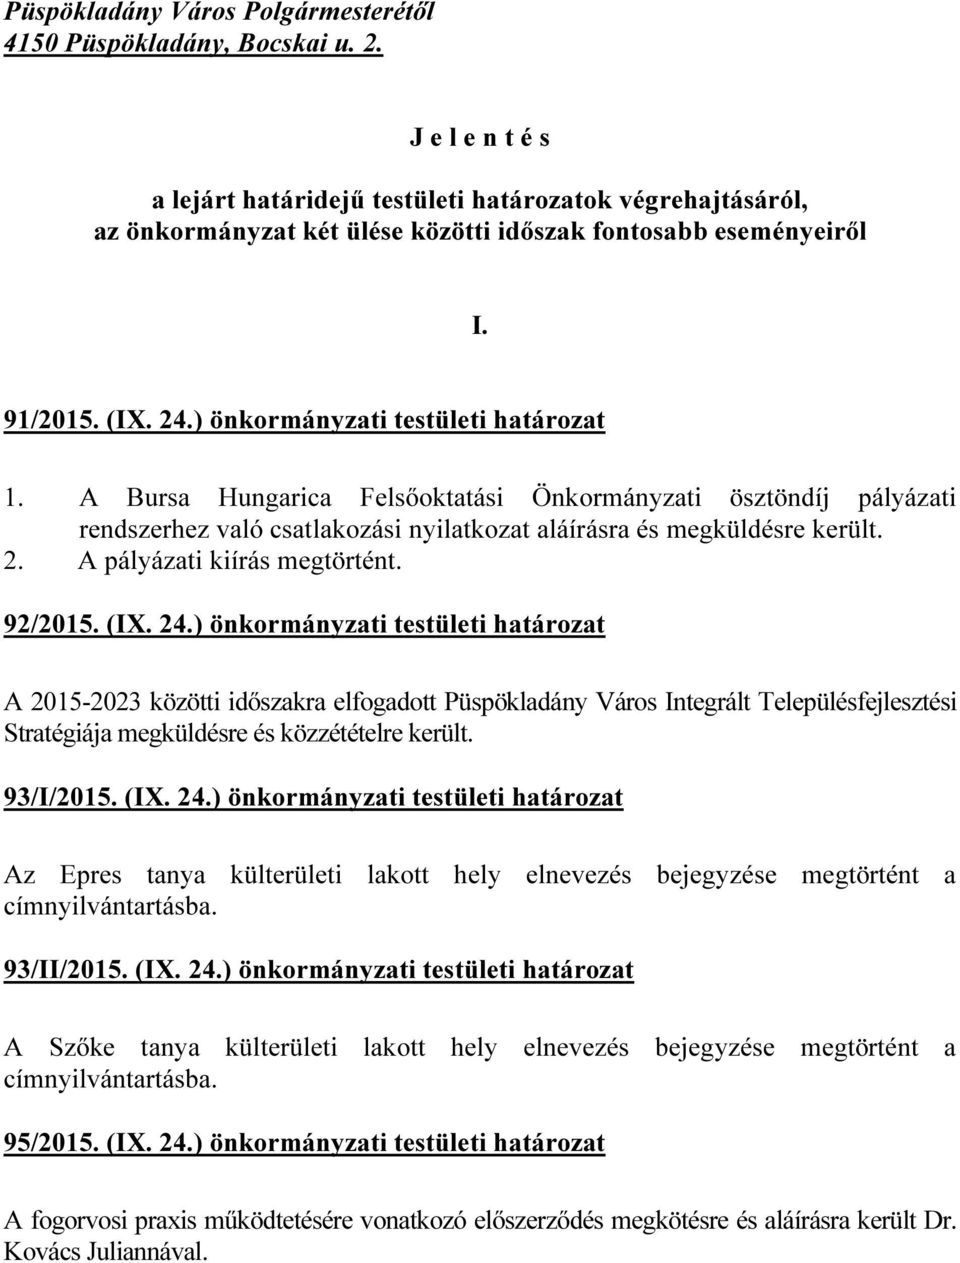 A Bursa Hungarica Felsőoktatási Önkormányzati ösztöndíj pályázati rendszerhez való csatlakozási nyilatkozat aláírásra és megküldésre került. 2. A pályázati kiírás megtörtént. 92/2015. (IX. 24.